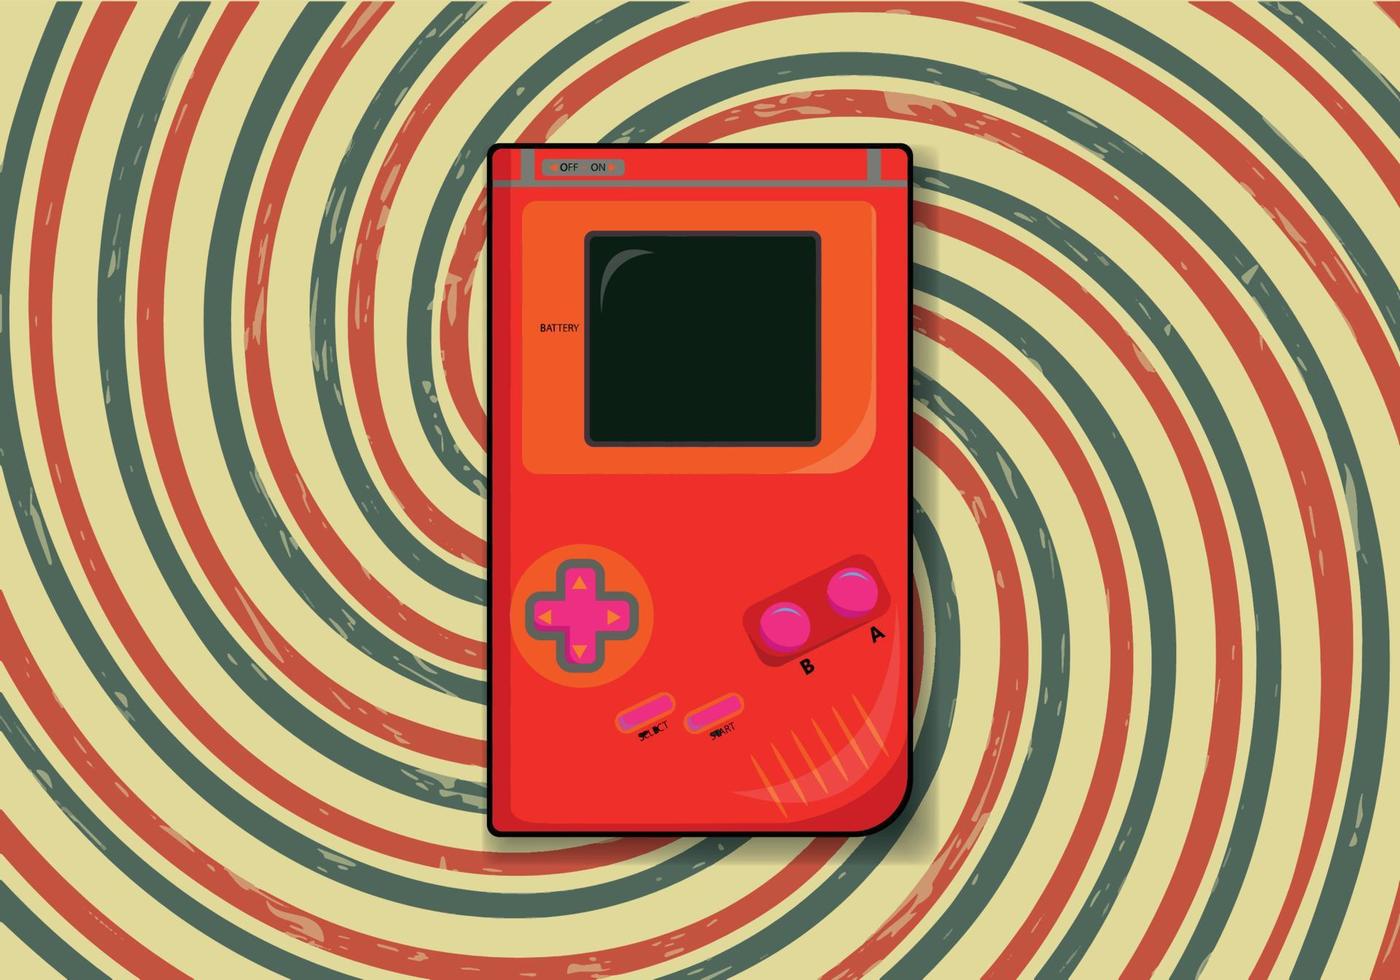 gratuito nostalgia game Boy design. retrò gioco gadget. piatto vettore illustrazione con retrò sfondo.